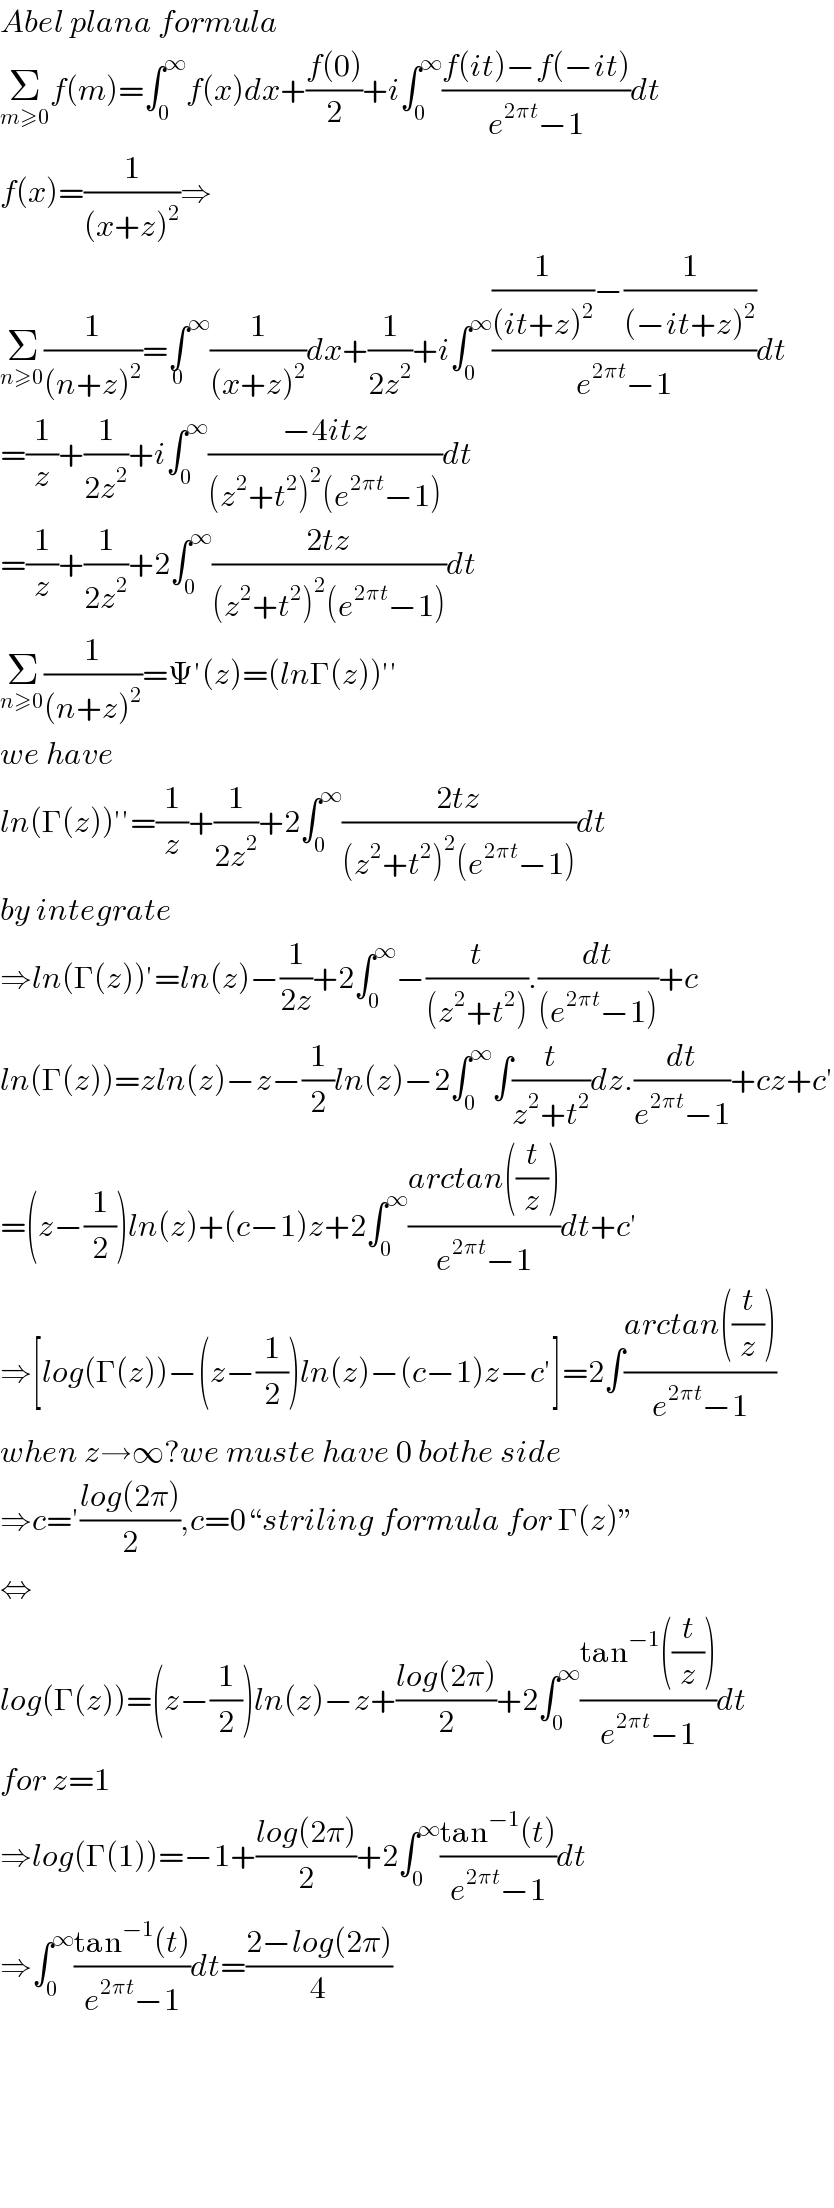 Abel plana formula  Σ_(m≥0) f(m)=∫_0 ^∞ f(x)dx+((f(0))/2)+i∫_0 ^∞ ((f(it)−f(−it))/(e^(2πt) −1))dt  f(x)=(1/((x+z)^2 ))⇒  Σ_(n≥0) (1/((n+z)^2 ))=∫^∞ _0 (1/((x+z)^2 ))dx+(1/(2z^2 ))+i∫_0 ^∞ (((1/((it+z)^2 ))−(1/((−it+z)^2 )))/(e^(2πt) −1))dt  =(1/z)+(1/(2z^2 ))+i∫_0 ^∞ ((−4itz)/((z^2 +t^2 )^2 (e^(2πt) −1)))dt  =(1/z)+(1/(2z^2 ))+2∫_0 ^∞ ((2tz)/((z^2 +t^2 )^2 (e^(2πt) −1)))dt  Σ_(n≥0) (1/((n+z)^2 ))=Ψ′(z)=(lnΓ(z))′′  we have  ln(Γ(z))′′=(1/z)+(1/(2z^2 ))+2∫_0 ^∞ ((2tz)/((z^2 +t^2 )^2 (e^(2πt) −1)))dt  by integrate  ⇒ln(Γ(z))′=ln(z)−(1/(2z))+2∫_0 ^∞ −(t/((z^2 +t^2 ))).(dt/((e^(2πt) −1)))+c  ln(Γ(z))=zln(z)−z−(1/2)ln(z)−2∫_0 ^∞ ∫(t/(z^2 +t^2 ))dz.(dt/(e^(2πt) −1))+cz+c′  =(z−(1/2))ln(z)+(c−1)z+2∫_0 ^∞ ((arctan((t/z)))/(e^(2πt) −1))dt+c′  ⇒[log(Γ(z))−(z−(1/2))ln(z)−(c−1)z−c′]=2∫((arctan((t/z)))/(e^(2πt) −1))  when z→∞?we muste have 0 bothe side  ⇒c=′((log(2π))/2),c=0“striling formula for Γ(z)”  ⇔  log(Γ(z))=(z−(1/2))ln(z)−z+((log(2π))/2)+2∫_0 ^∞ ((tan^(−1) ((t/z)))/(e^(2πt) −1))dt  for z=1  ⇒log(Γ(1))=−1+((log(2π))/2)+2∫_0 ^∞ ((tan^(−1) (t))/(e^(2πt) −1))dt  ⇒∫_0 ^∞ ((tan^(−1) (t))/(e^(2πt) −1))dt=((2−log(2π))/4)          